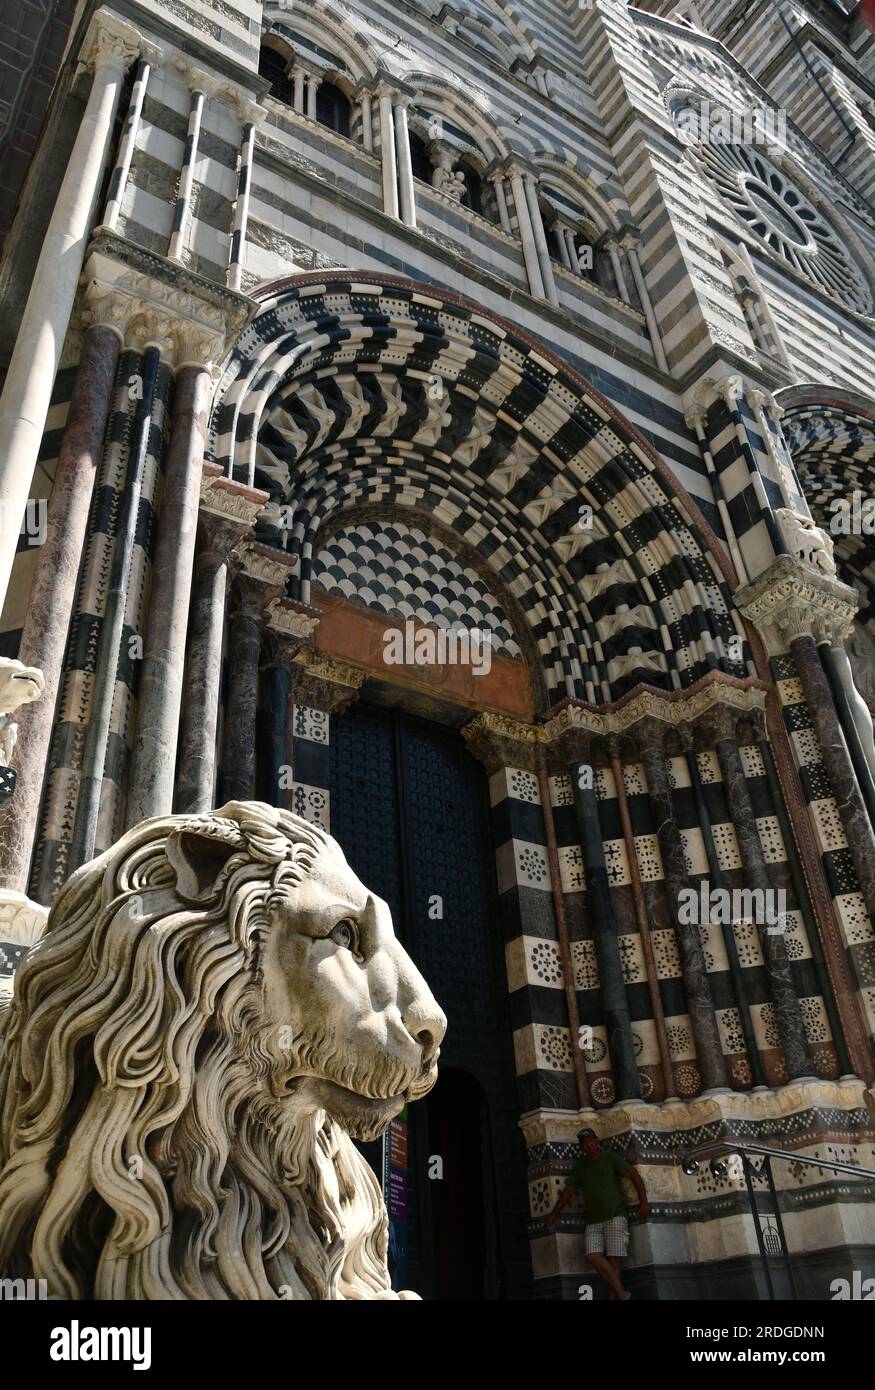 La cathédrale de San Lorenzo est le lieu de culte catholique le plus important de la ville de Gênes. Il a été consacré au saint en 1118 Banque D'Images